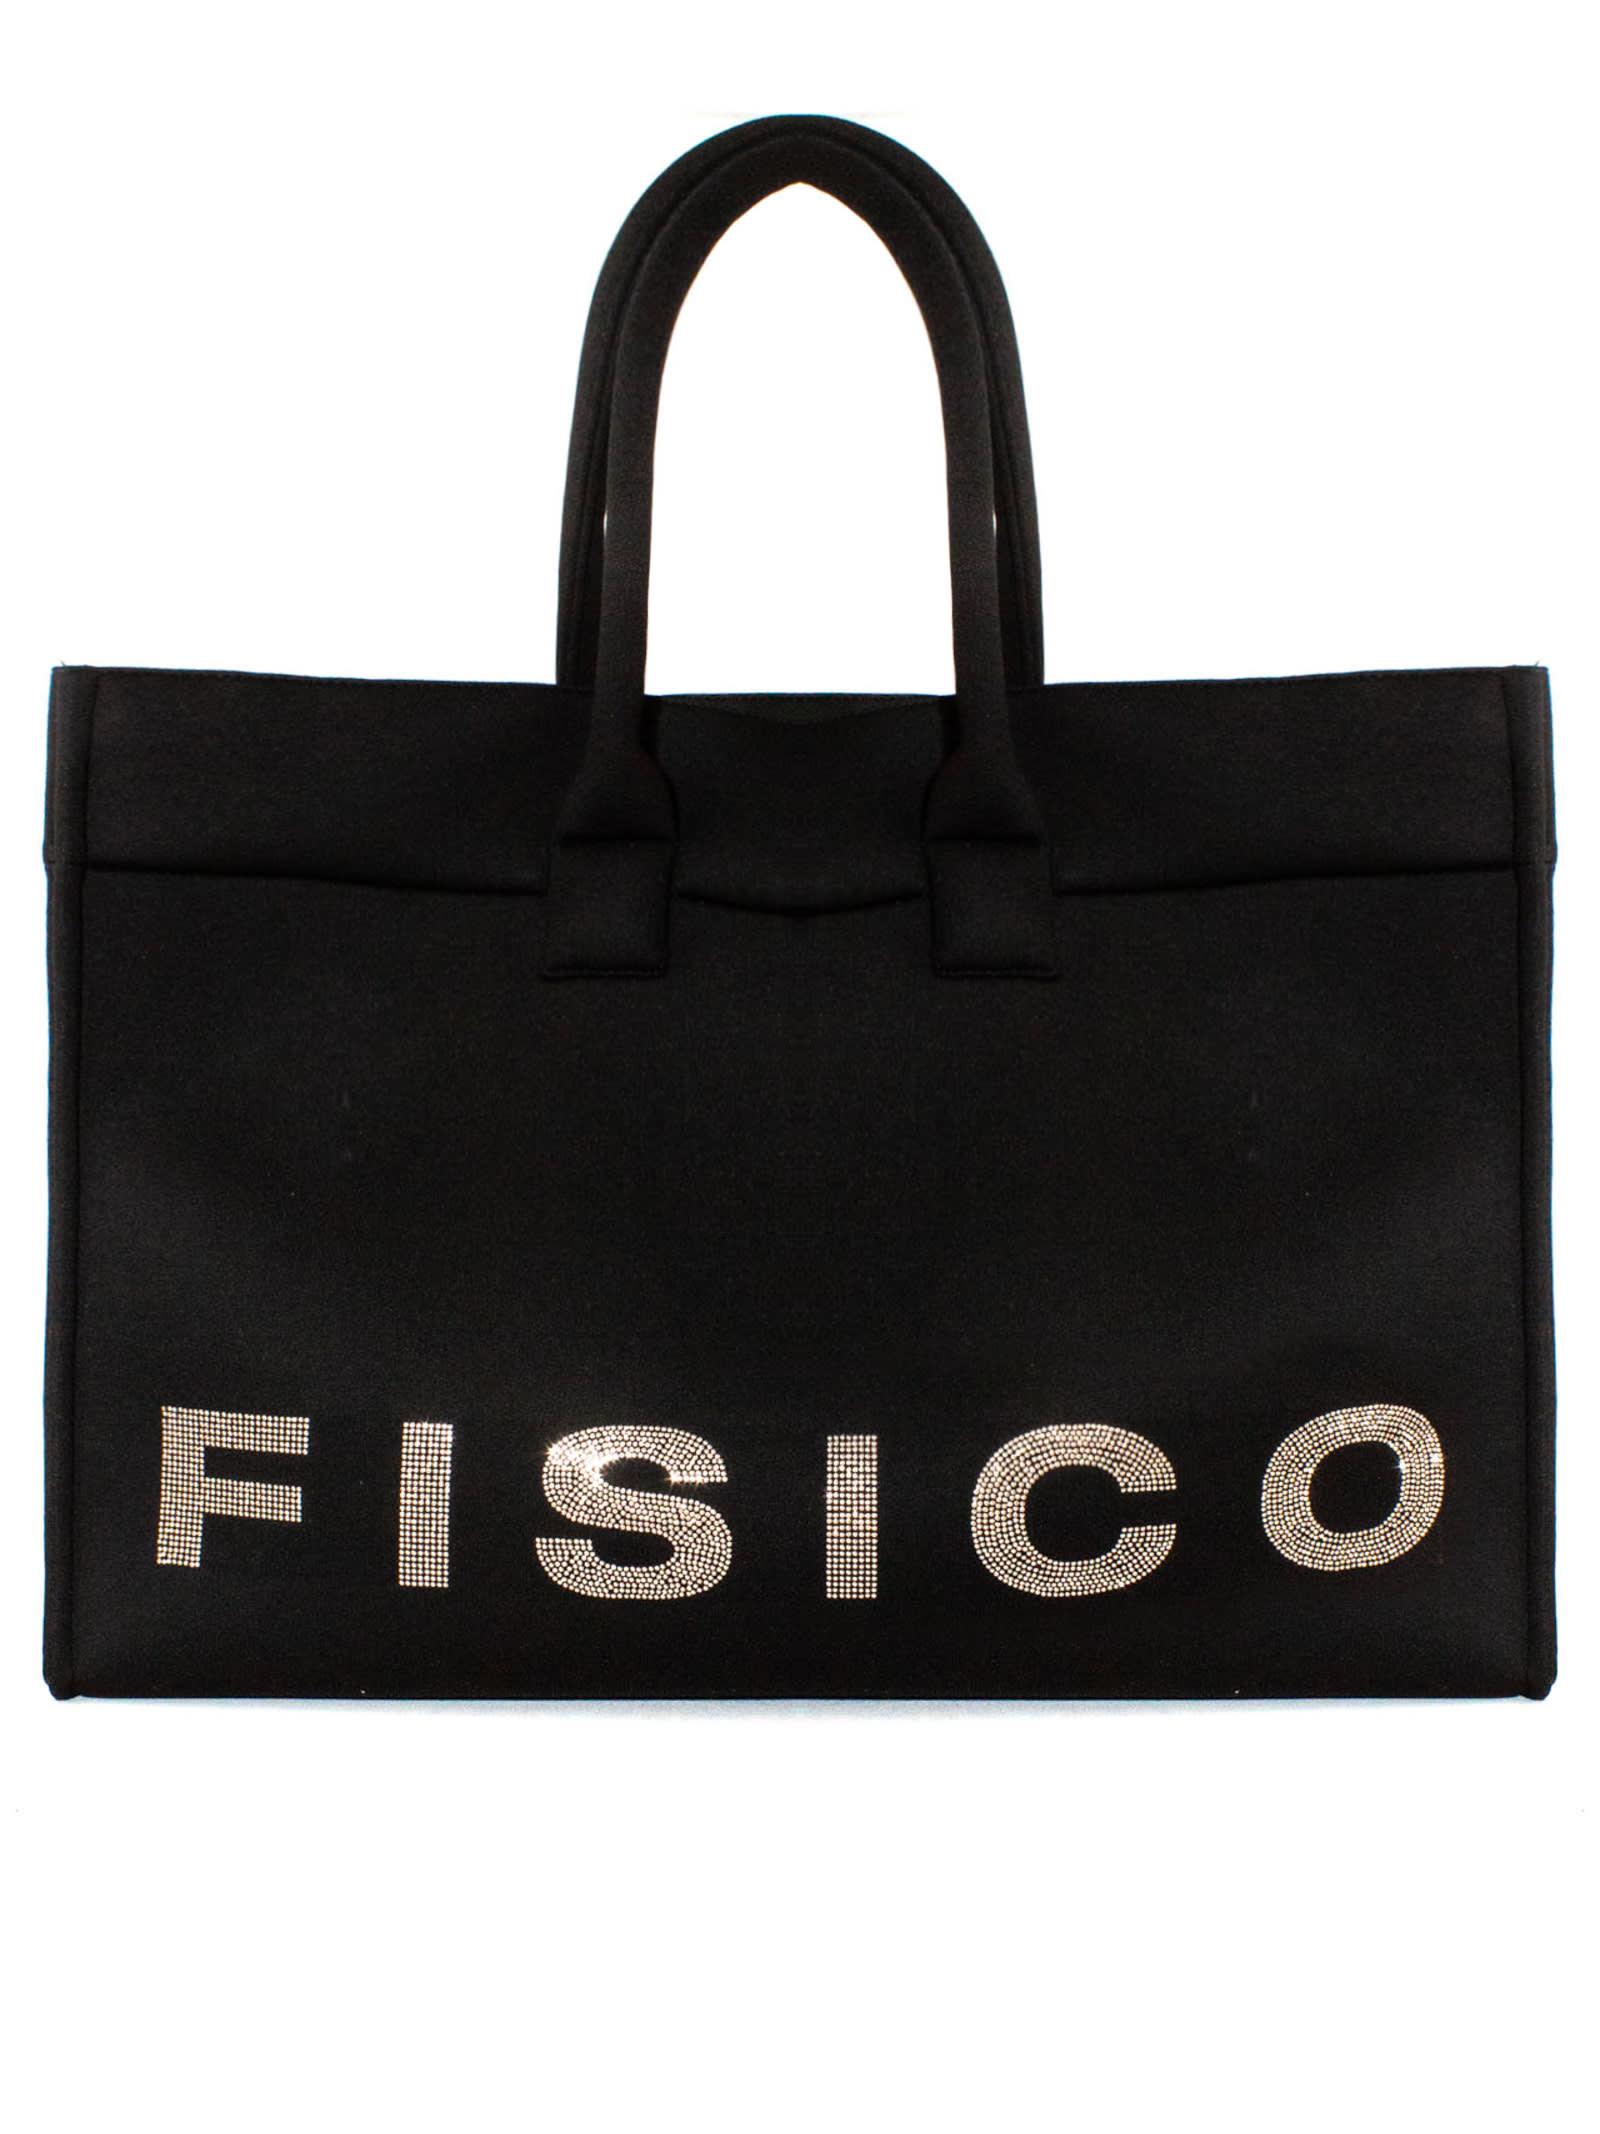 Fisico - Cristina Ferrari Black Microfibre Tote Bag